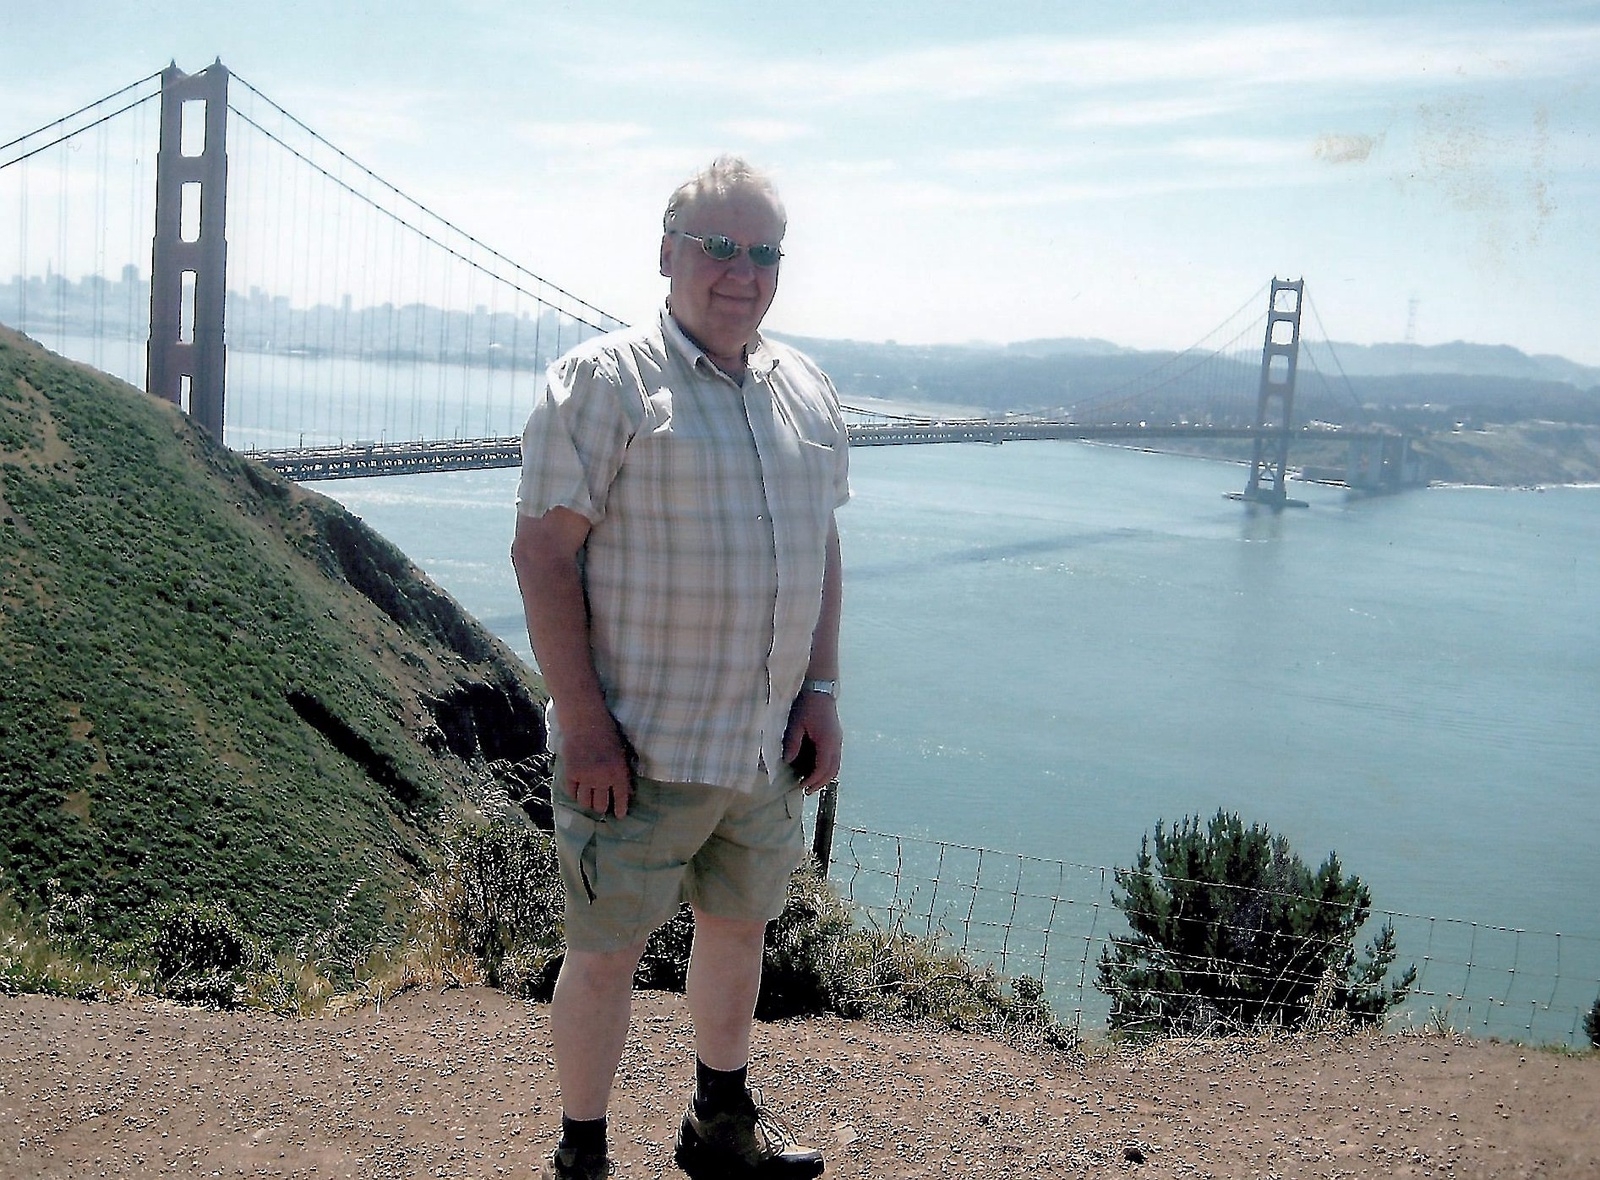 Golden Gatebron i San Francisco var världens längsta hängbro när den invigdes 1937.                                                
Foto: privat